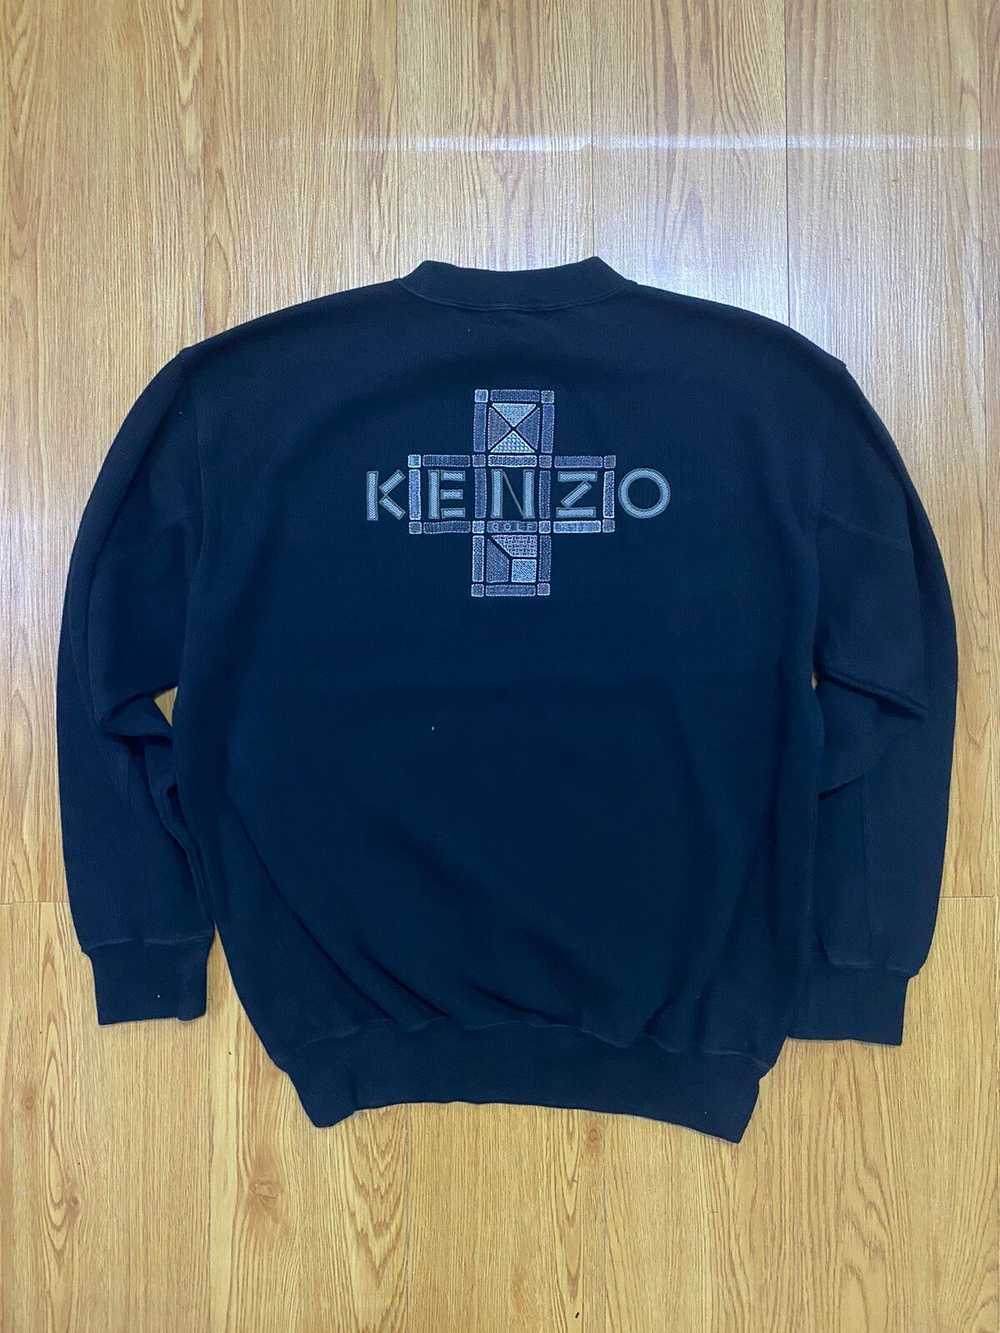 Kenzo Vintage Kenzo Golf Big Logo Sweatshirt - image 1